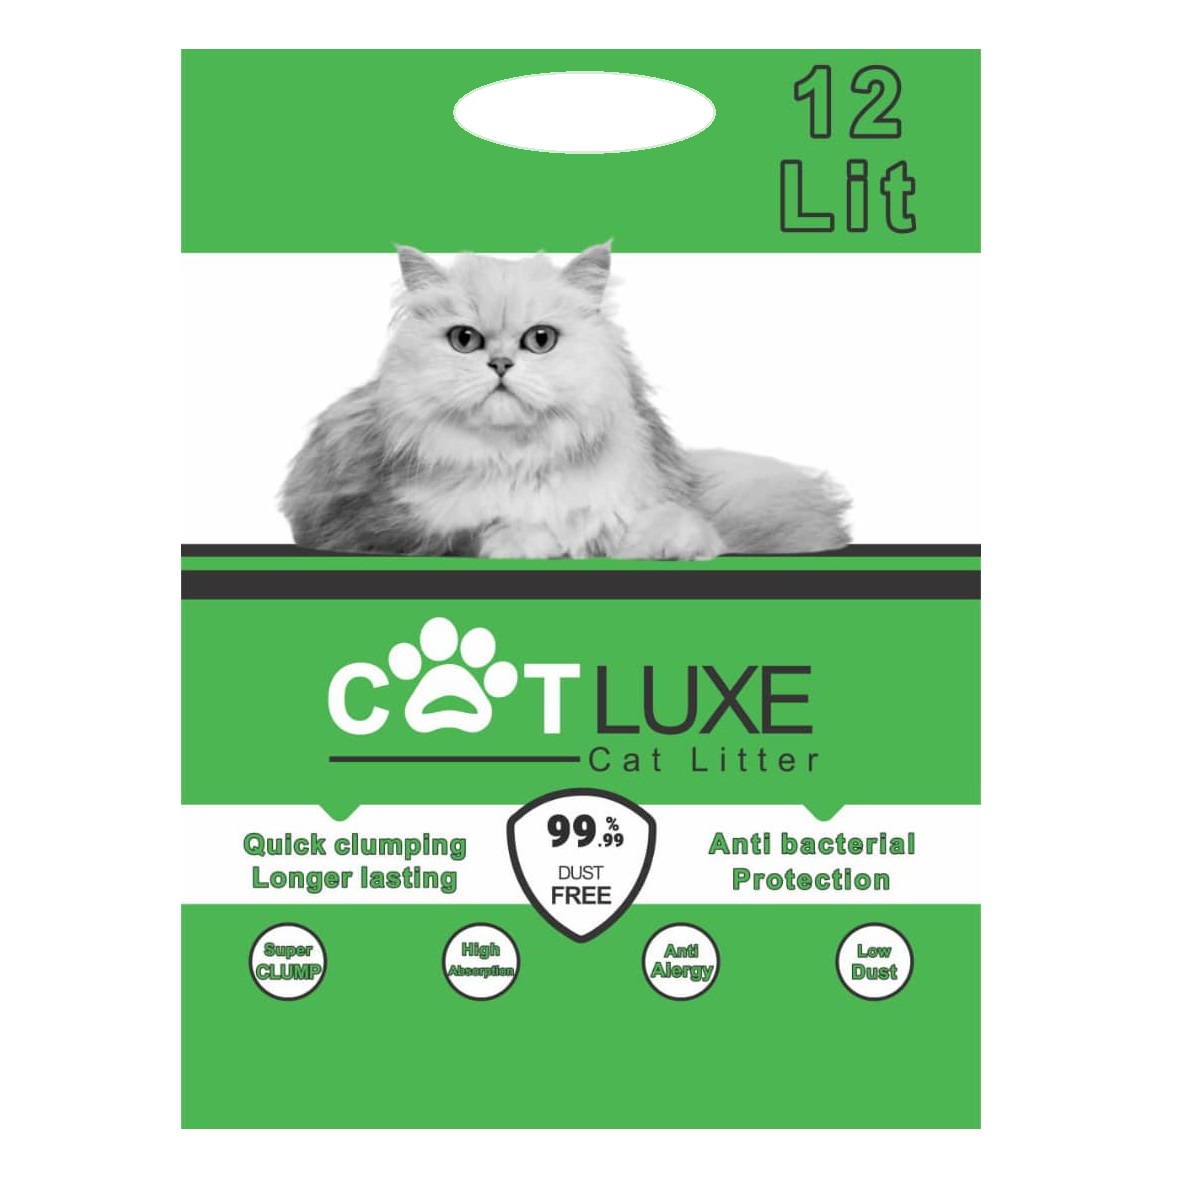 گربه ها عاشق چه غذایی هستند - خاک گربه کت لوکس گرانول وزن 10 کیلوگرم